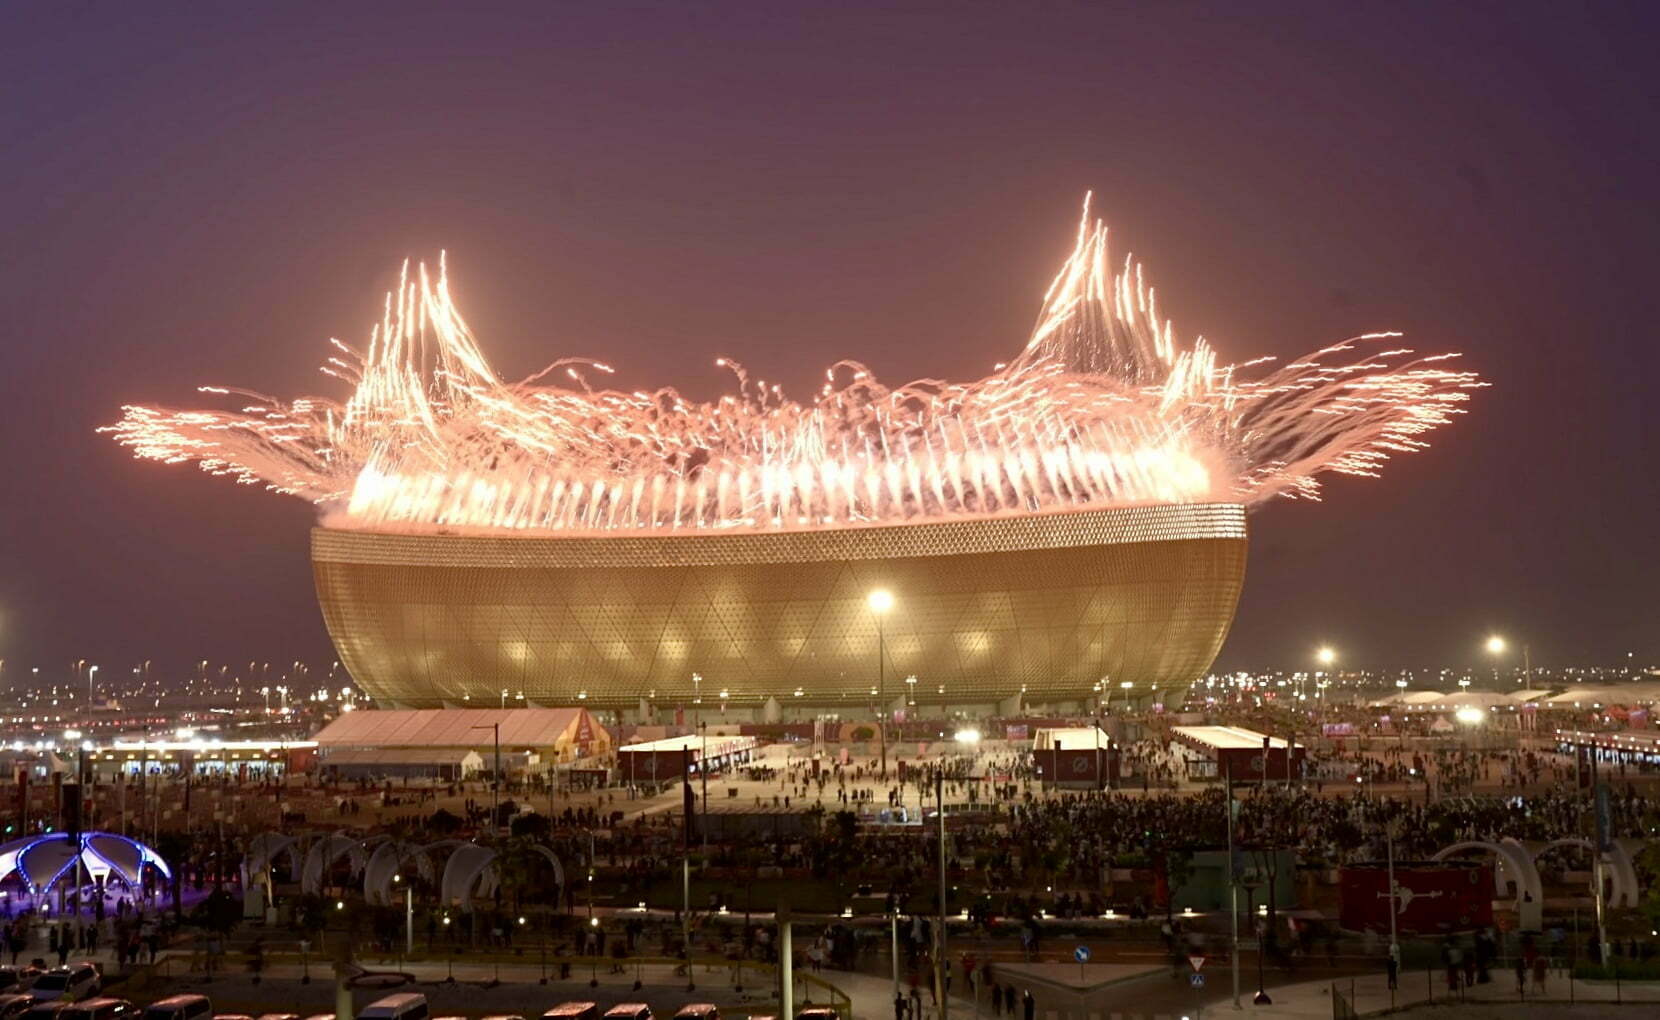 FIFA World Cup Final 2022 in Qatar - Lusail Stadium